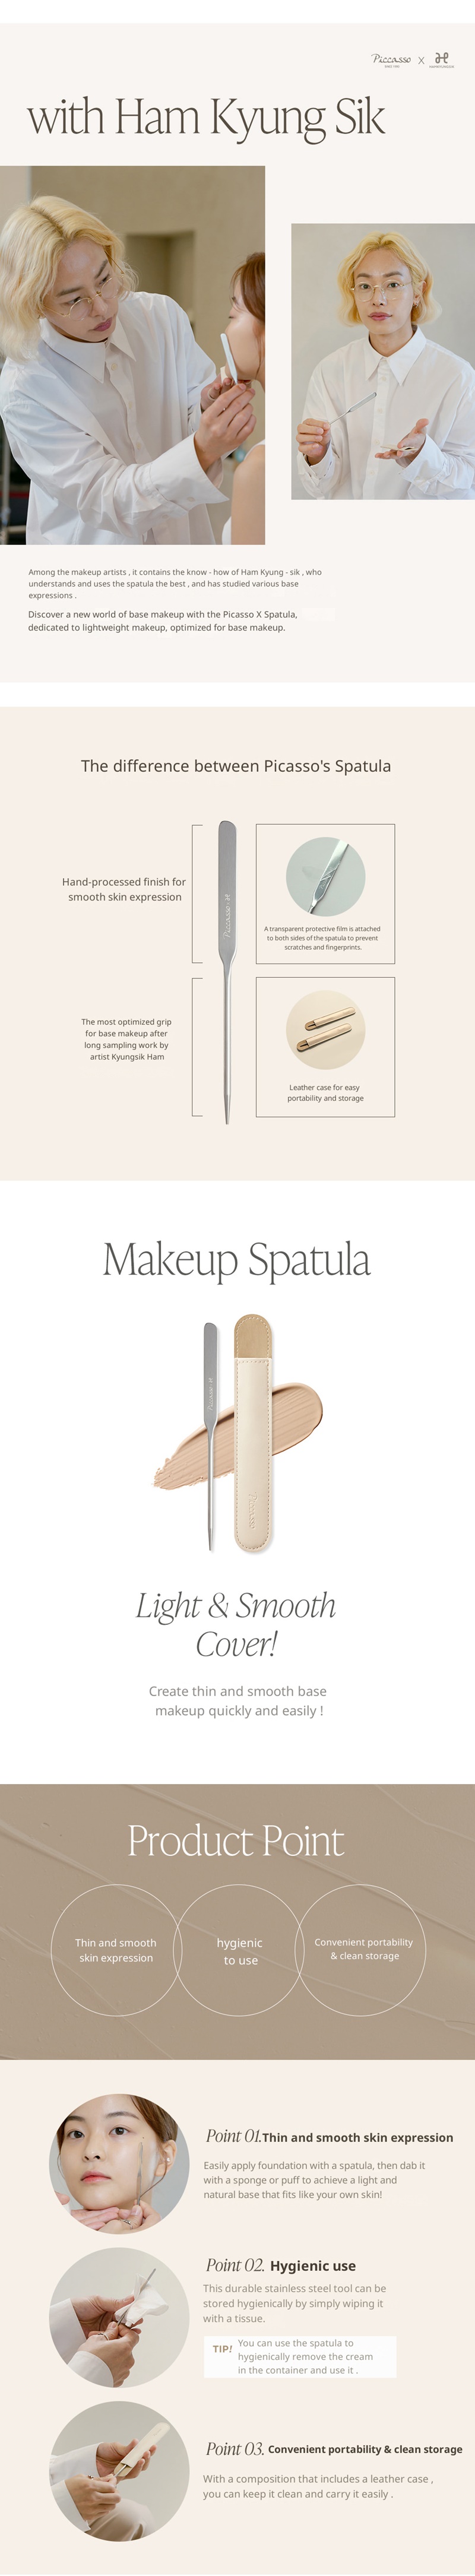 Piccasso Makeup Spatula - Piccasso Makeup Spatula en2